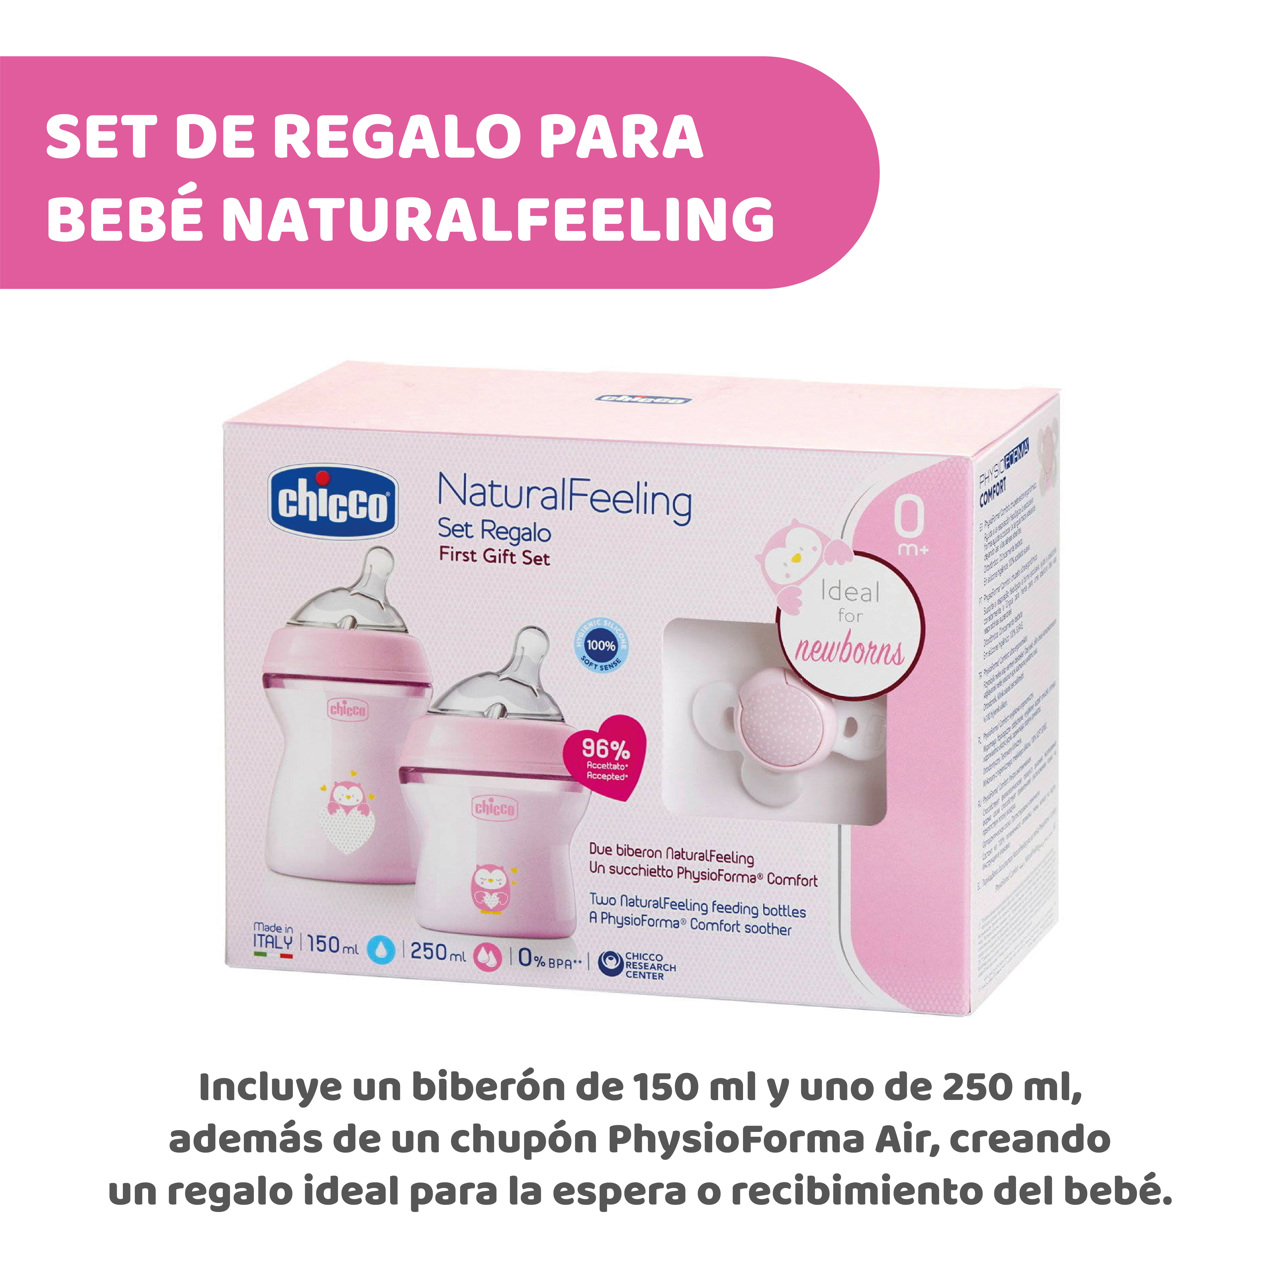 Avent - Set de regalo para bebé con biberón natural rosa con Snuggle